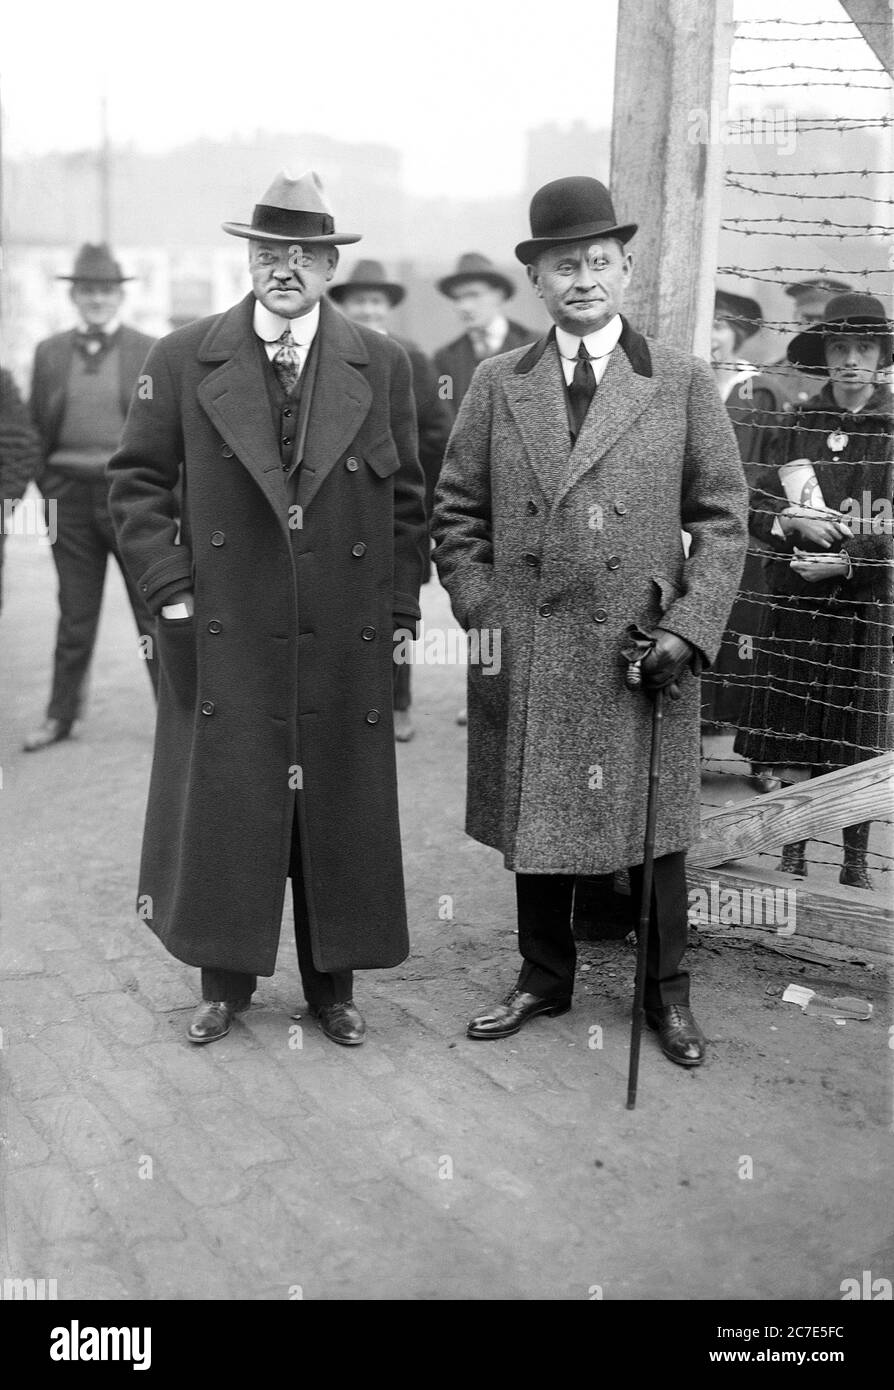 Herbert Hoover (1874-1964), Direktor der US-Lebensmittelbehörde während des Ersten Weltkriegs mit dem Geschäftsmann und Hersteller Edward Nash Hurley (1864-1933) auf der Straße in New York City, New York, USA, Bain News Service, 1917 Stockfoto